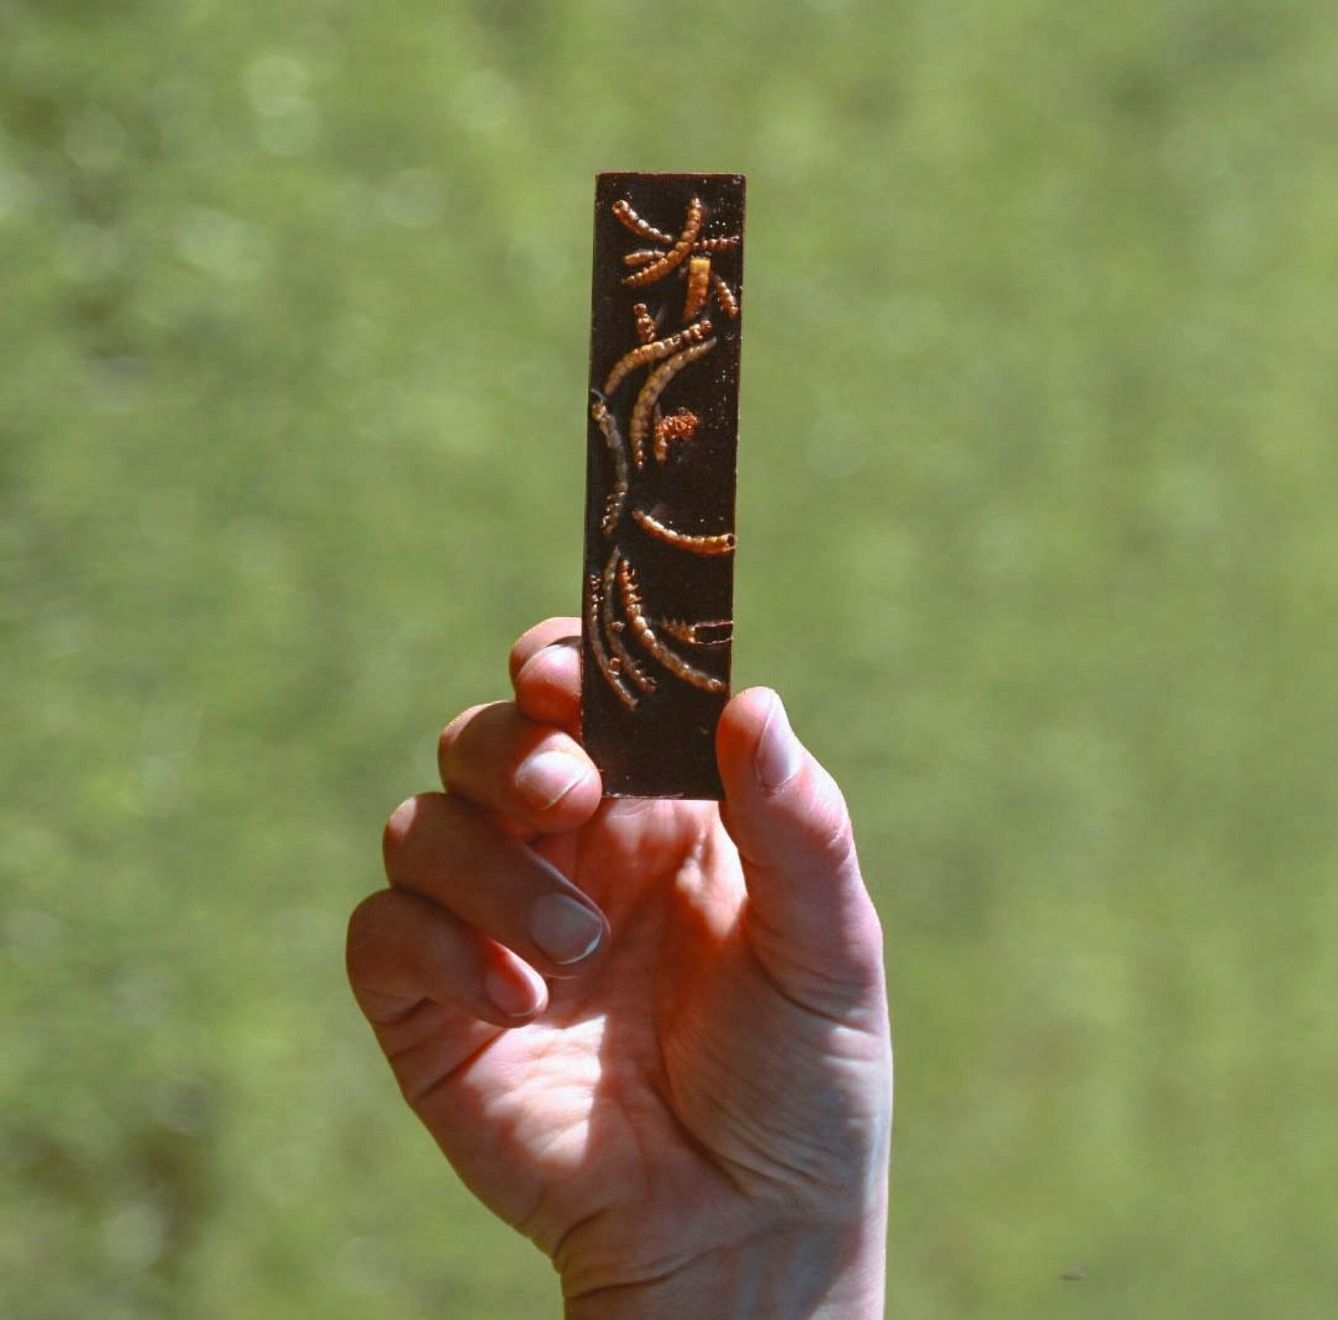 Una persona sostiene una barrita de chocolate que contiene Tenebrio mollitor. (EFE)